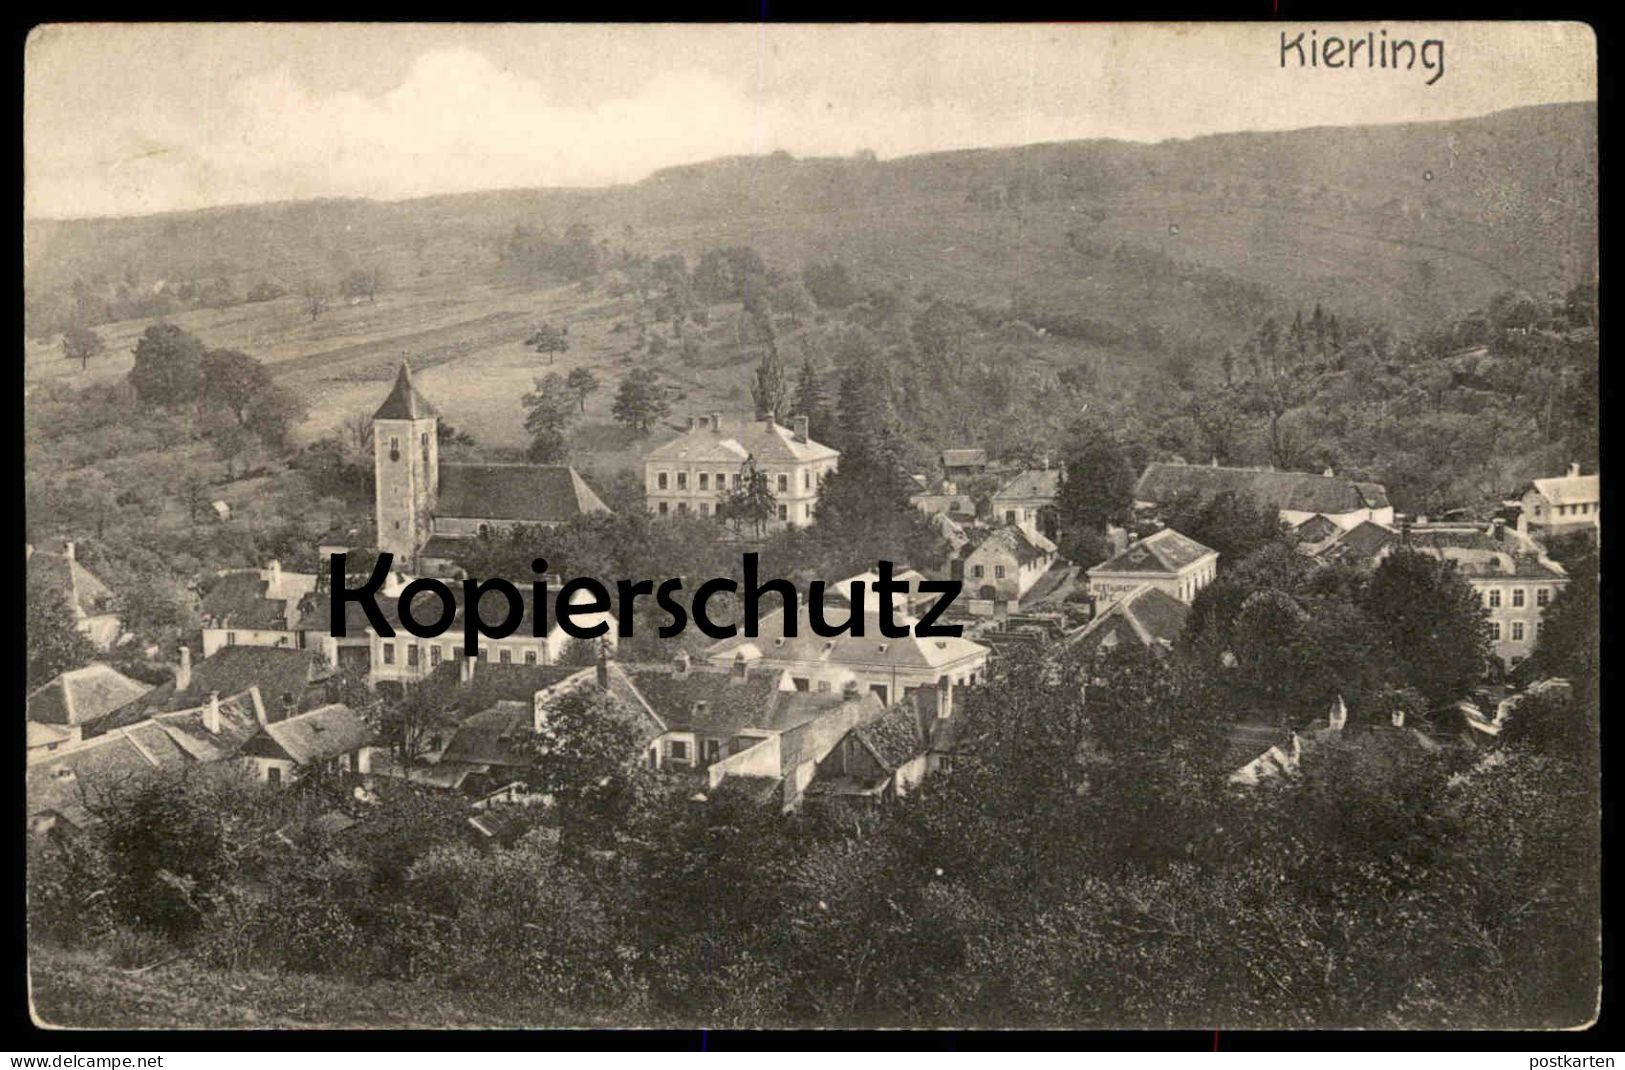 ALTE POSTKARTE KIERLING PANORAMA GESAMTANSICHT KLOSTERNEUBURG NIEDERÖSTERREICH Österreich Ansichtskarte AK Cpa Postcard - Klosterneuburg